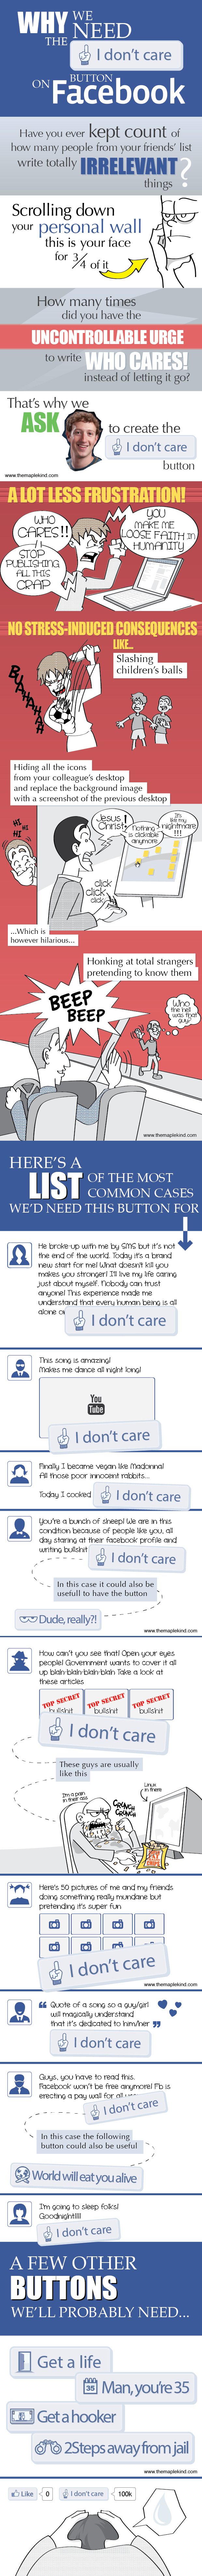 Facebook Don't care button